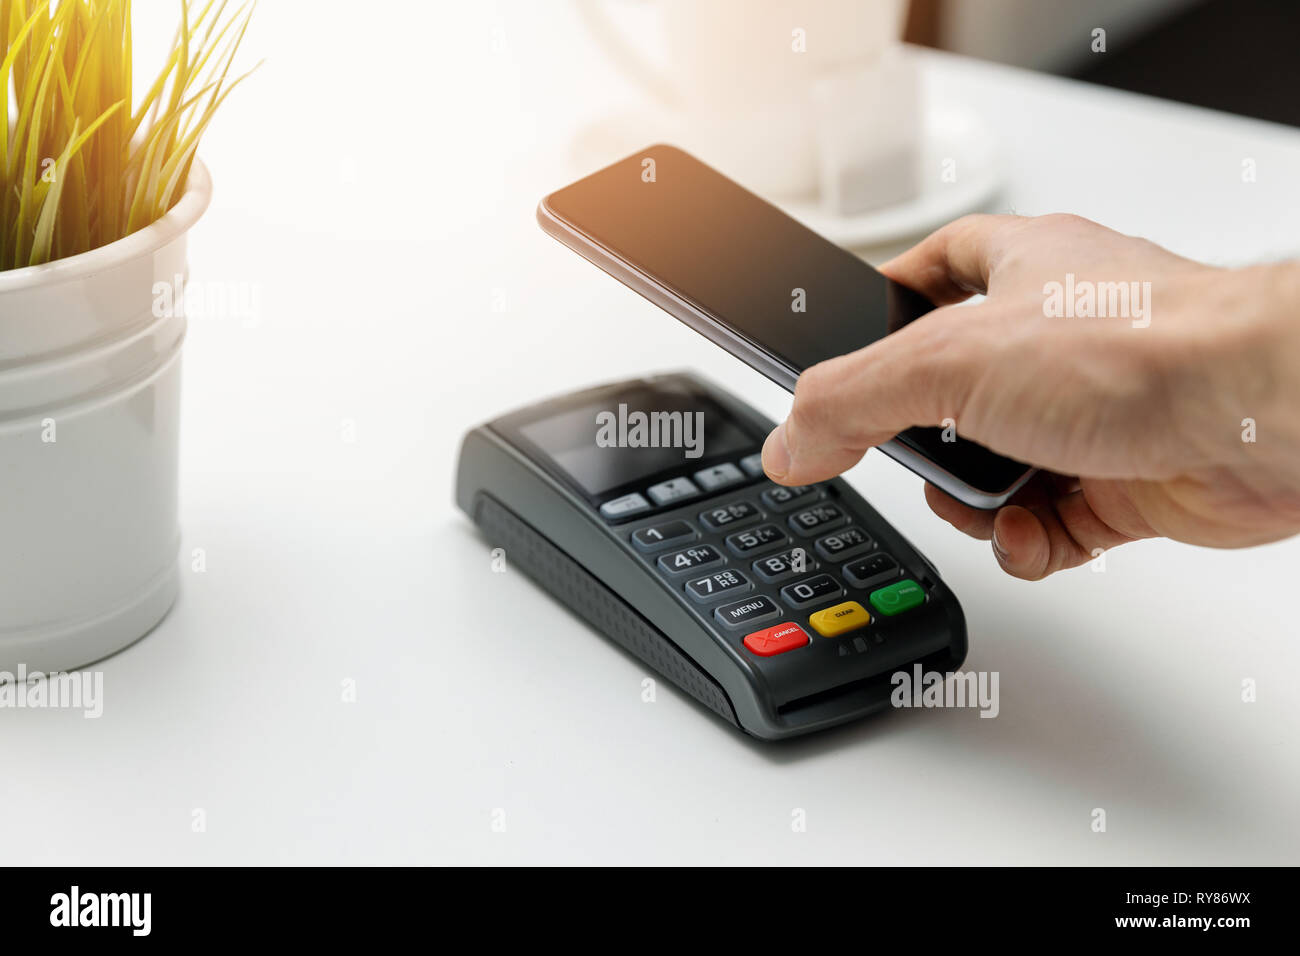 Nfc kontaktlose Zahlungen - Zahlung Rechnung mit Telefon Stockfoto